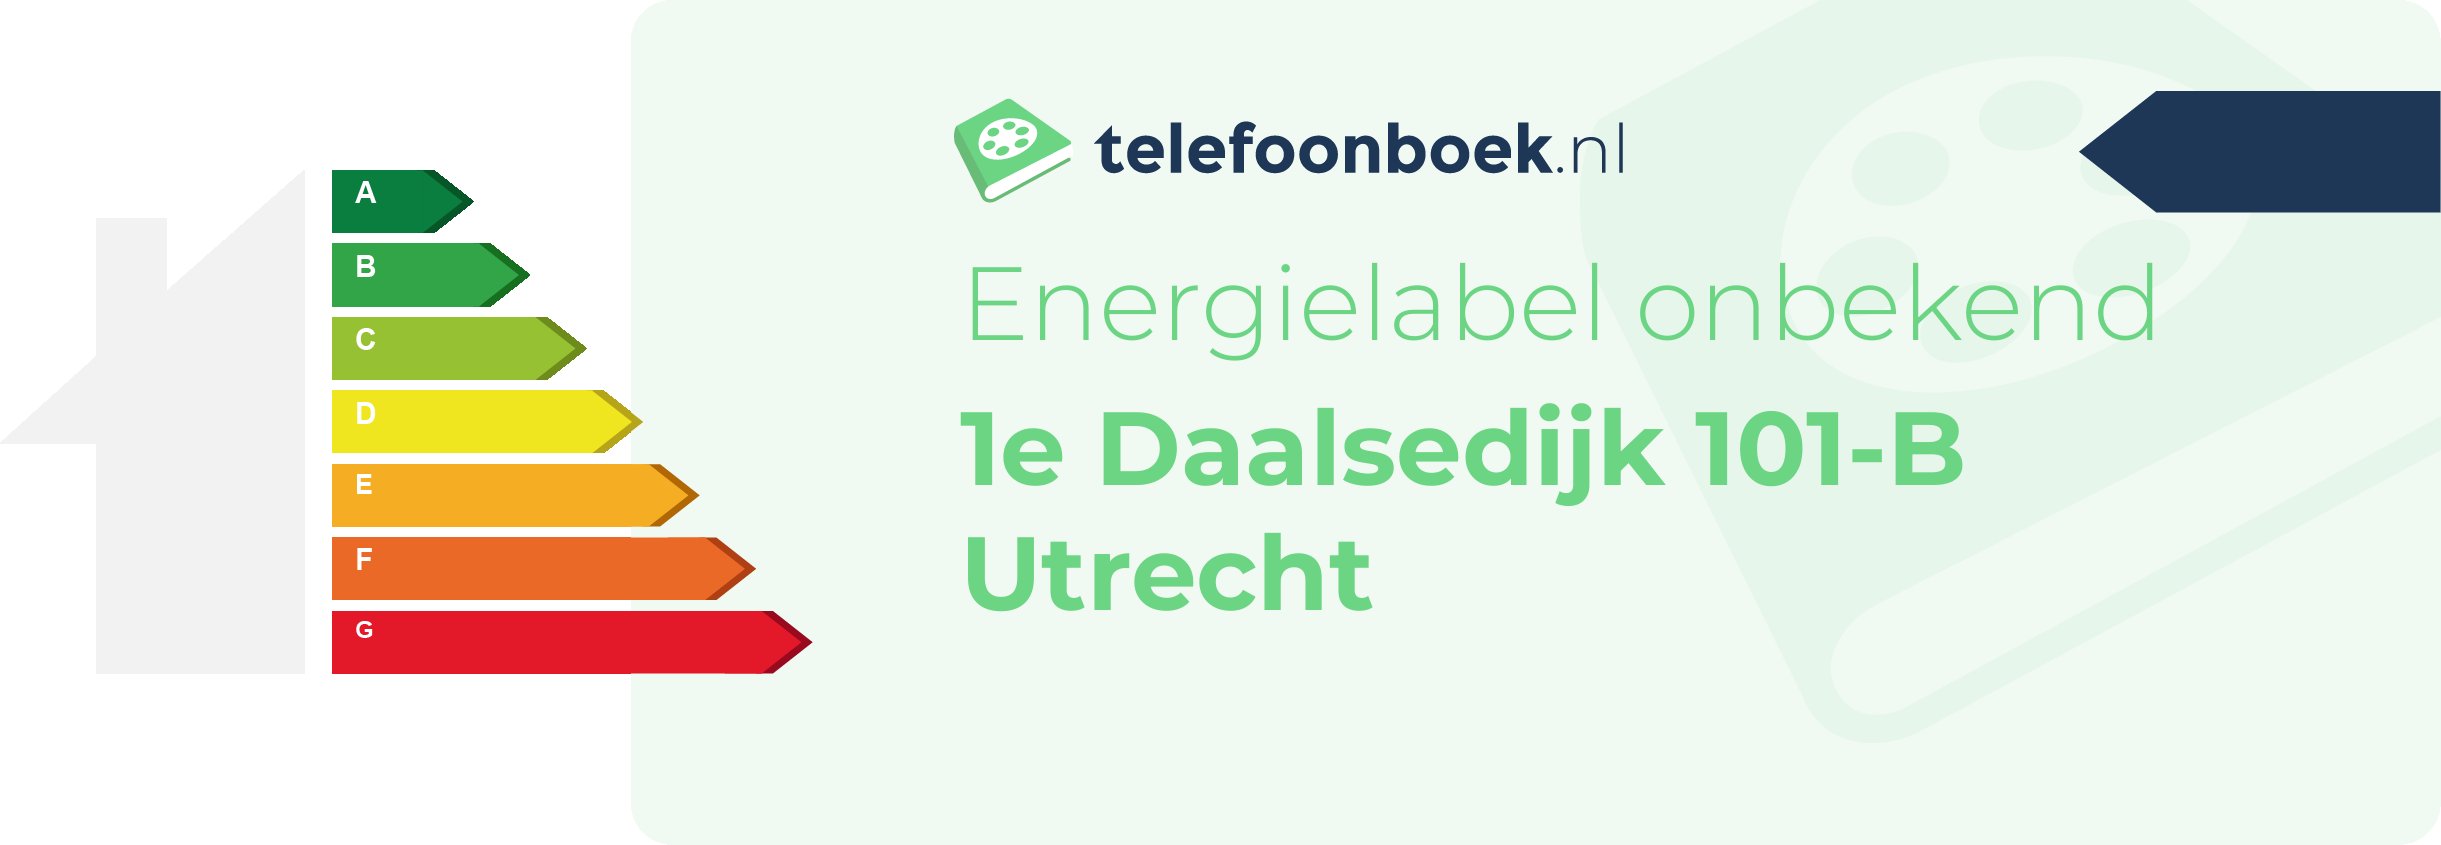 Energielabel 1e Daalsedijk 101-B Utrecht